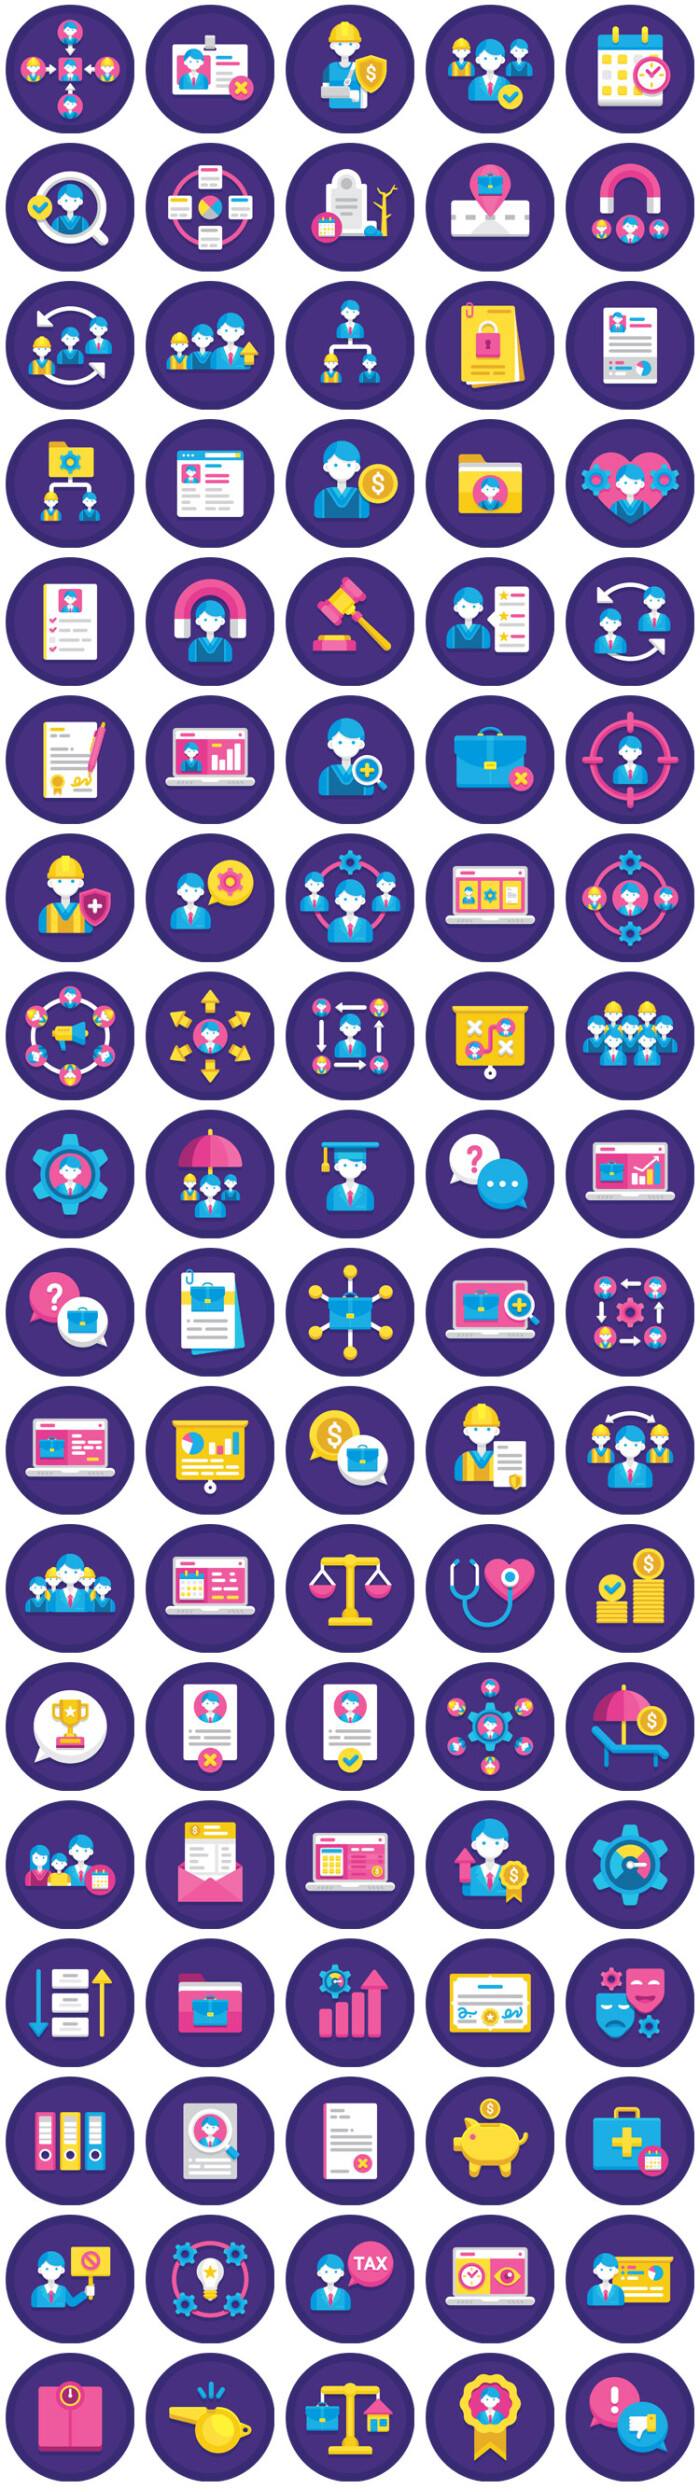 企业公司人力资源招聘人员配置插画图标徽标icon矢量素材模板设计